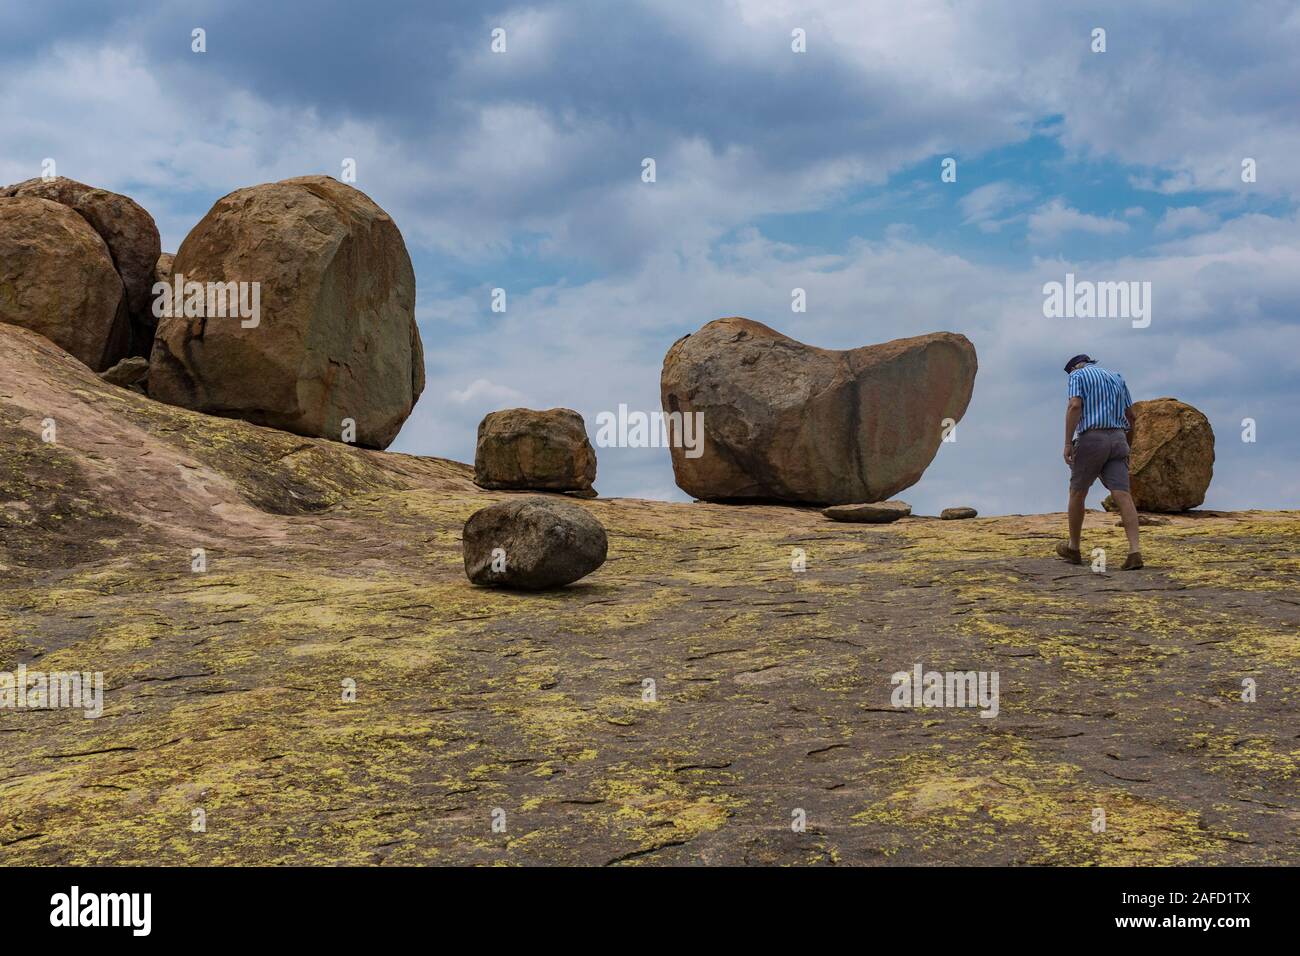 Un hombre sube a la cima de la colina 'World's View' en el Parque Nacional Matobo Hills, Zimbabwe. El lugar es conocido por sus impresionantes vistas de 360 grados y las famosas rocas equilibrantes, que fueron la razón por la que el explorador y magnate Cecil Rhodes ha elegido ser enterrado allí. Foto de stock